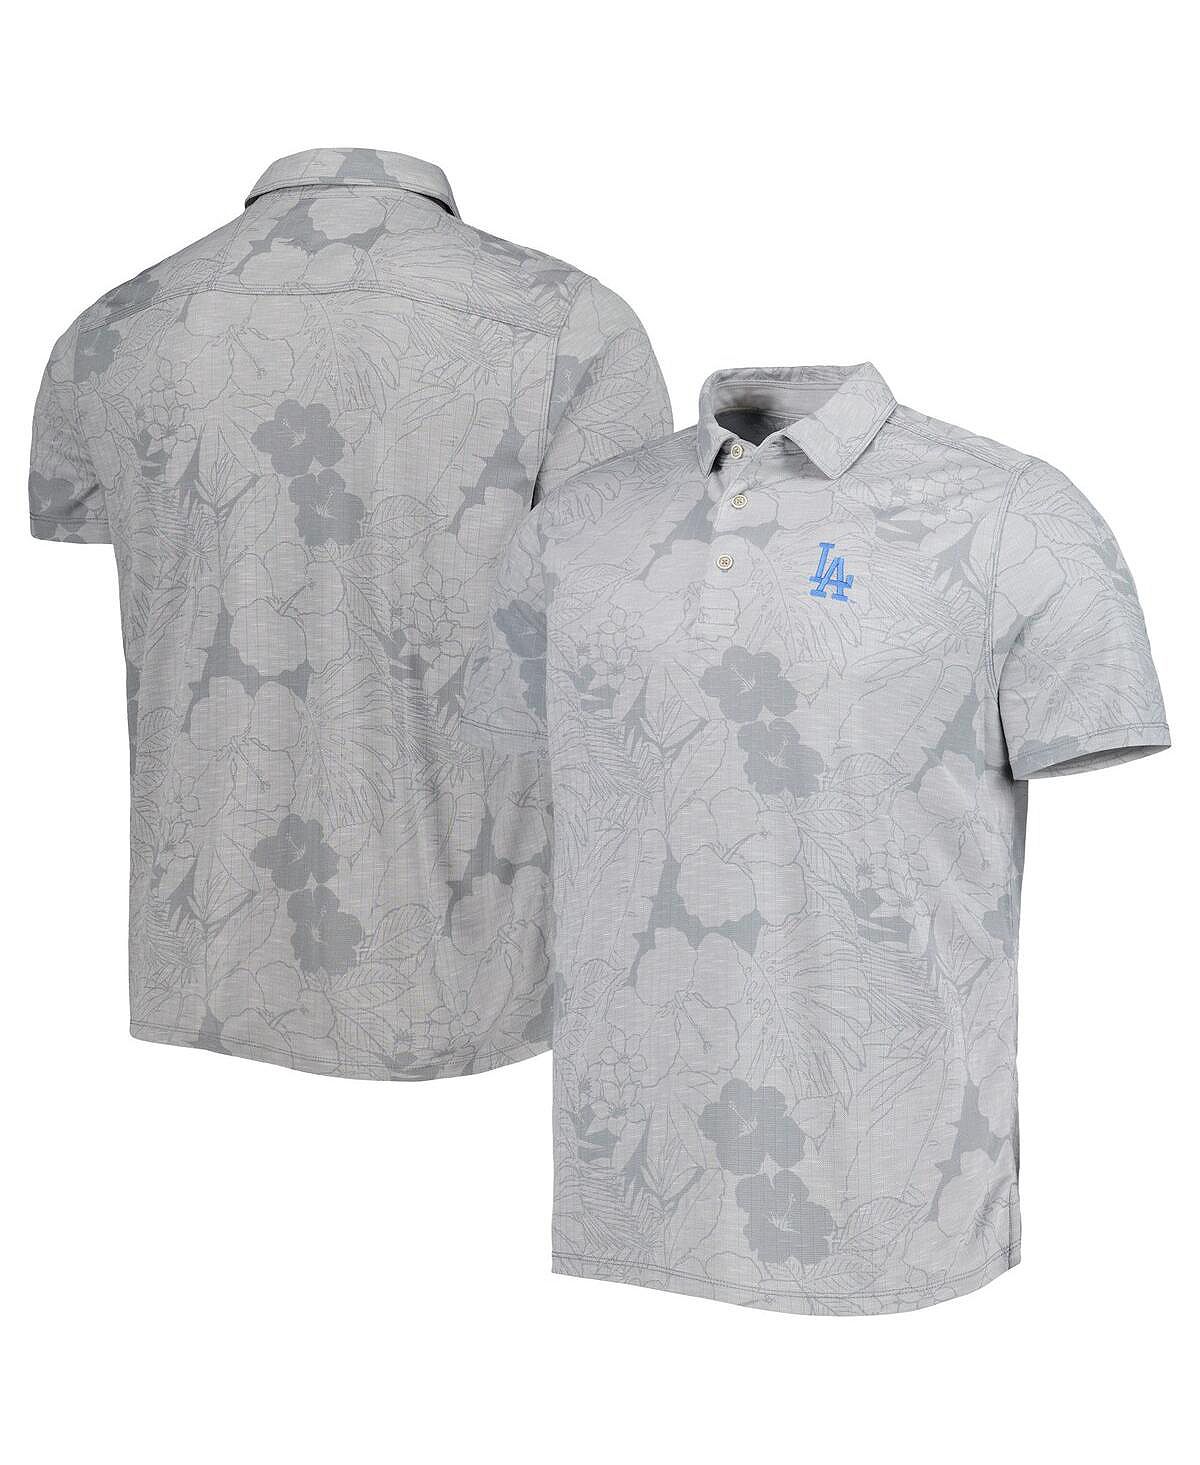 Мужская серая рубашка-поло Los Angeles Dodgers Miramar Blooms Tommy Bahama рубашка поло pina grande tommy bahama синий